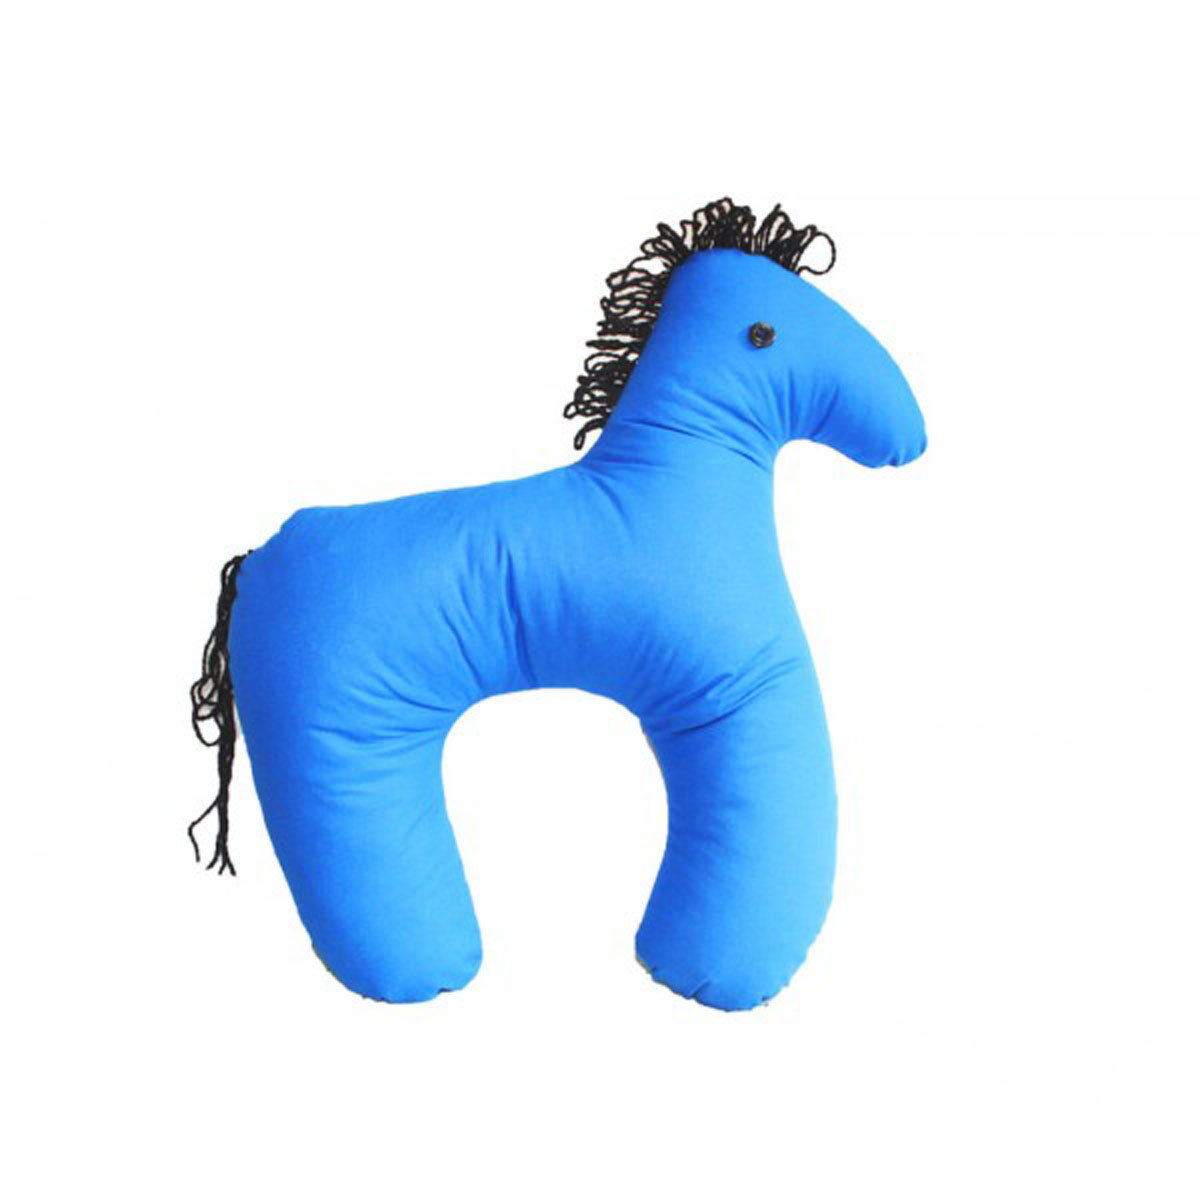 Мягкие игрушки «Подушка и лошадка» - купить в интернет-магазине, цена - руб.